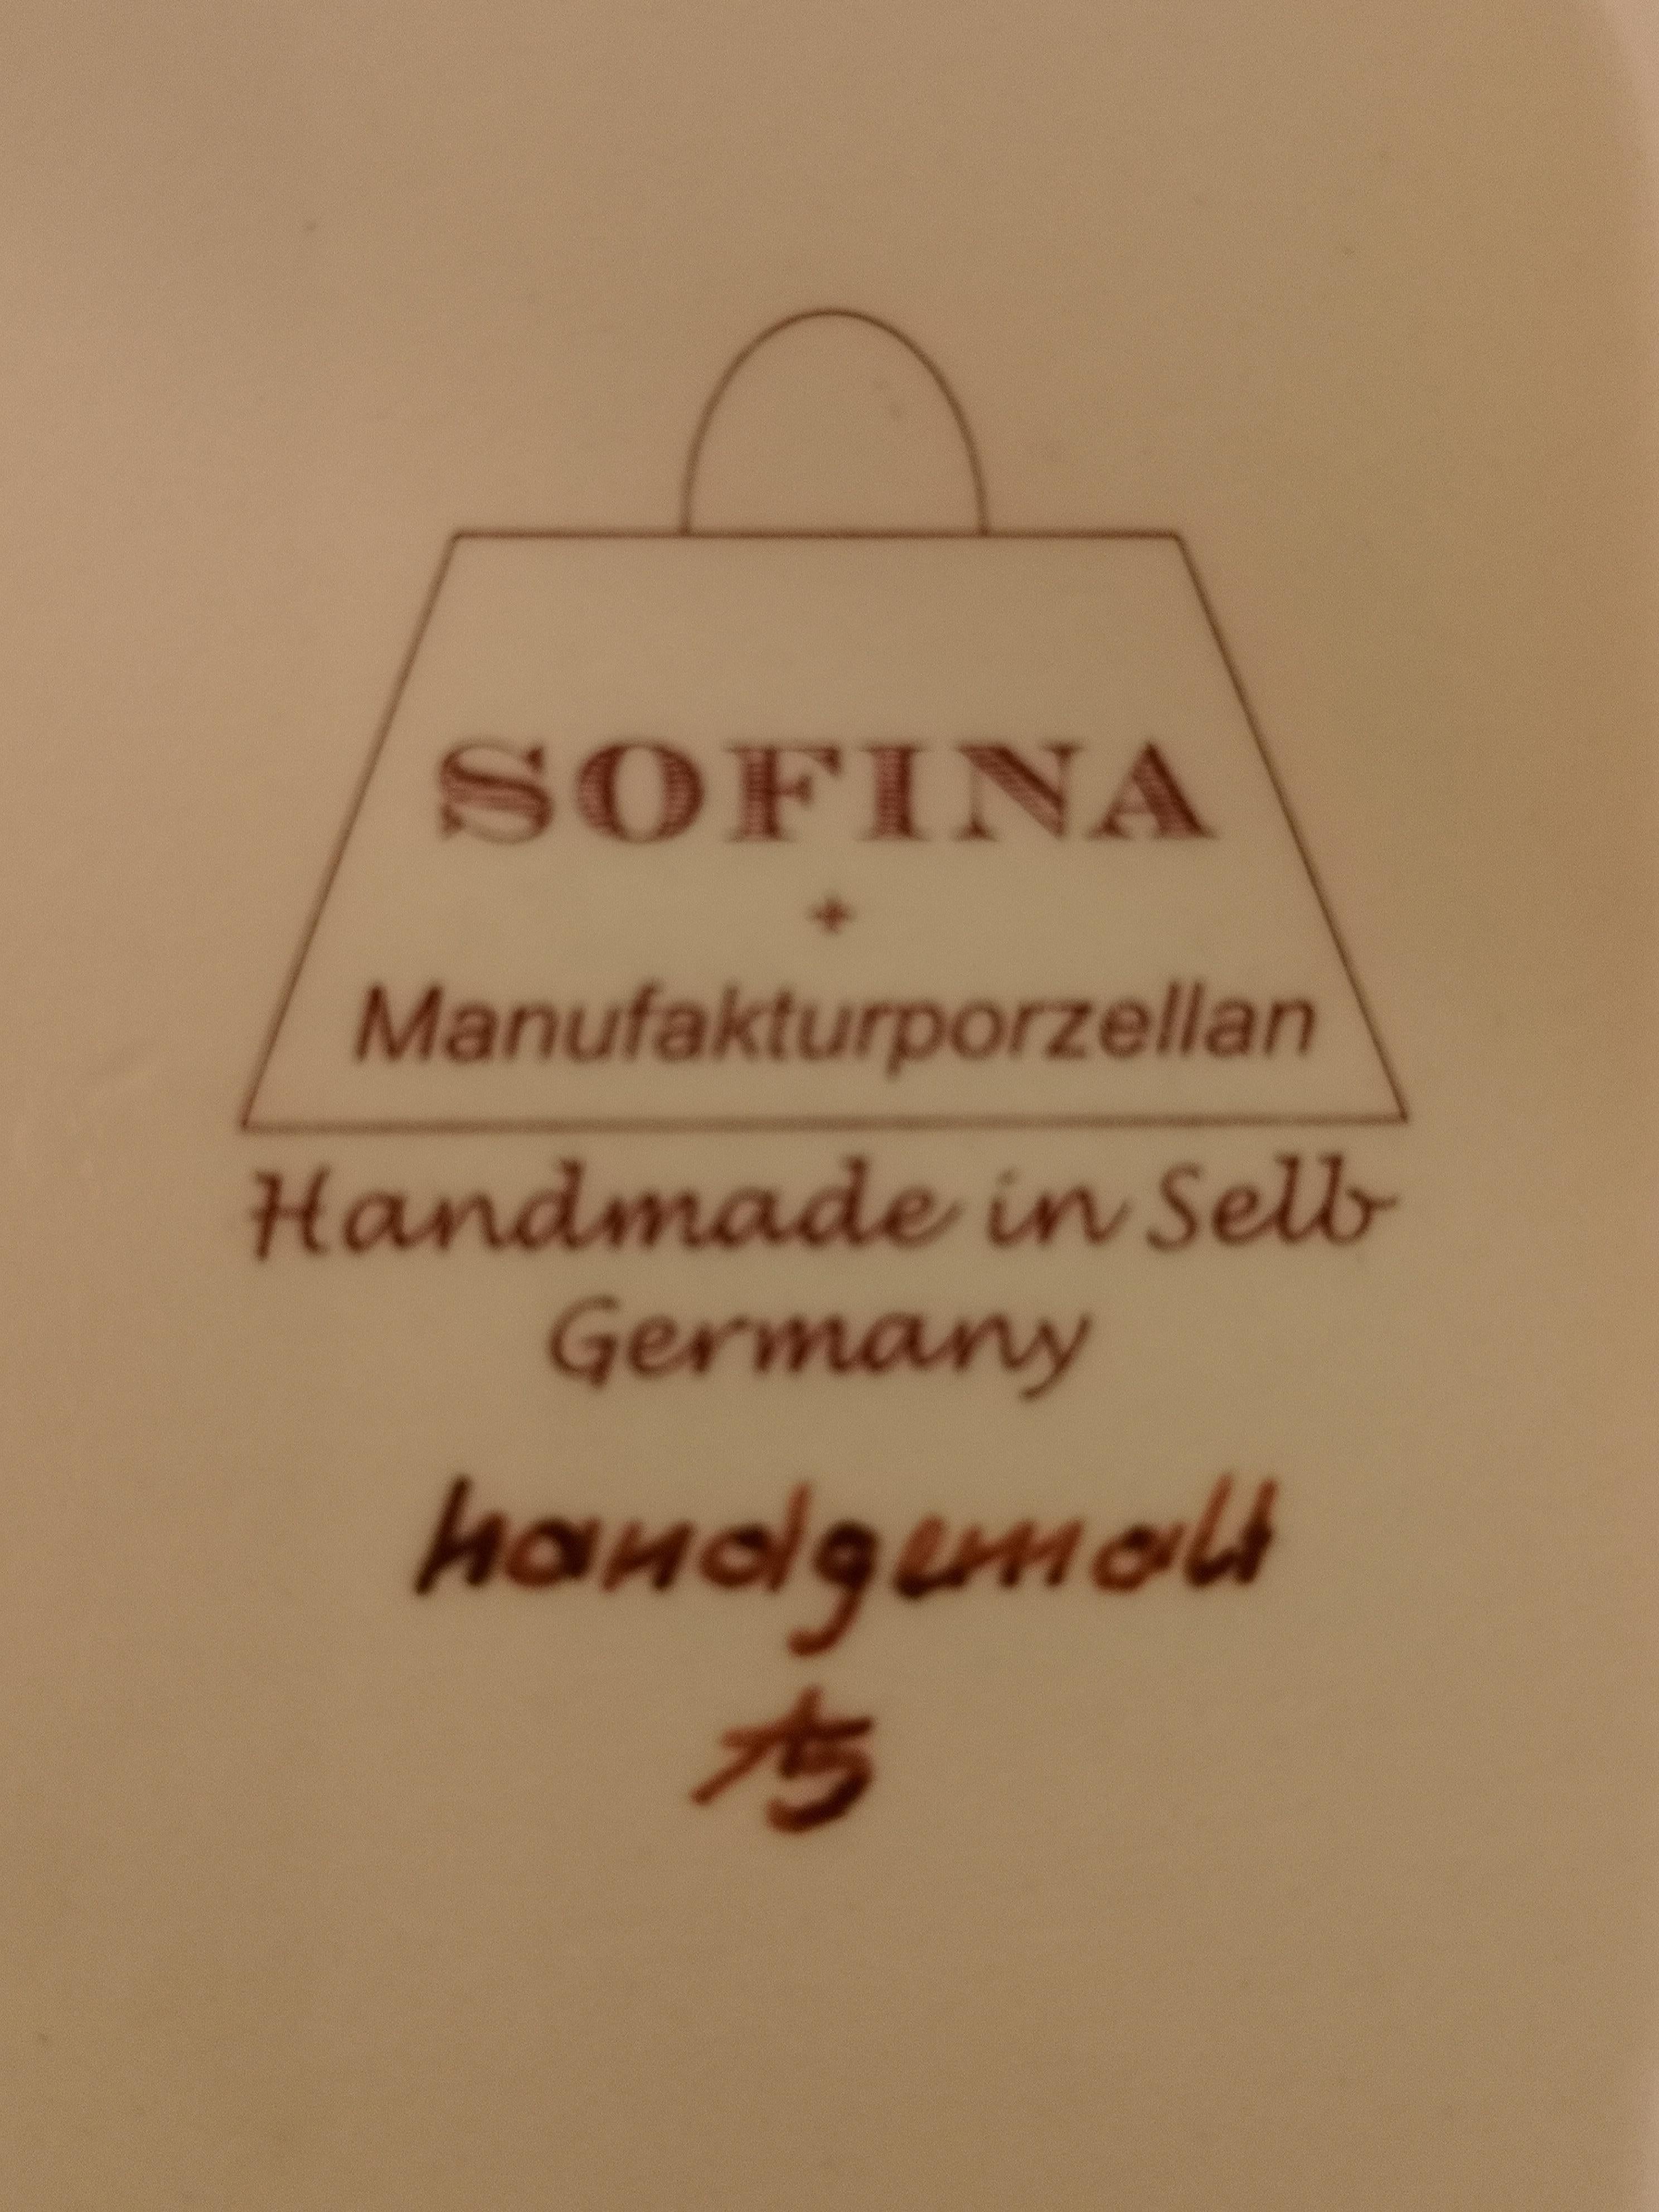 Schwarzwälder Schwarzwald-Handporzellanschale mit Eichhörnchenfigur Sofina Boutique Kitzbuehel 2